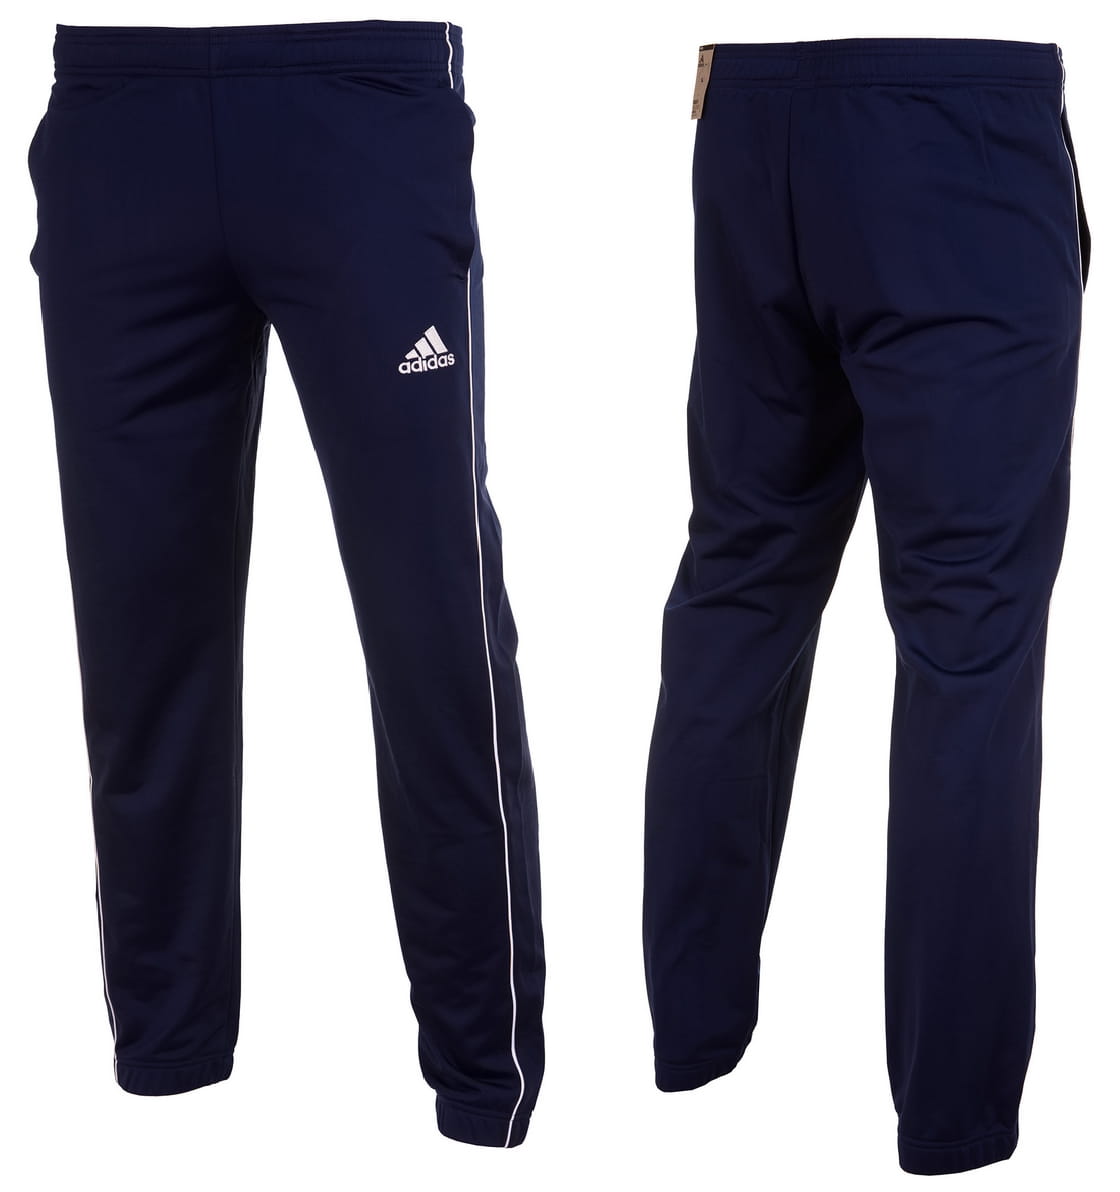 Pantalones Adidas Core 18 Junior Niña - CV3586 - azul oscuro depor8